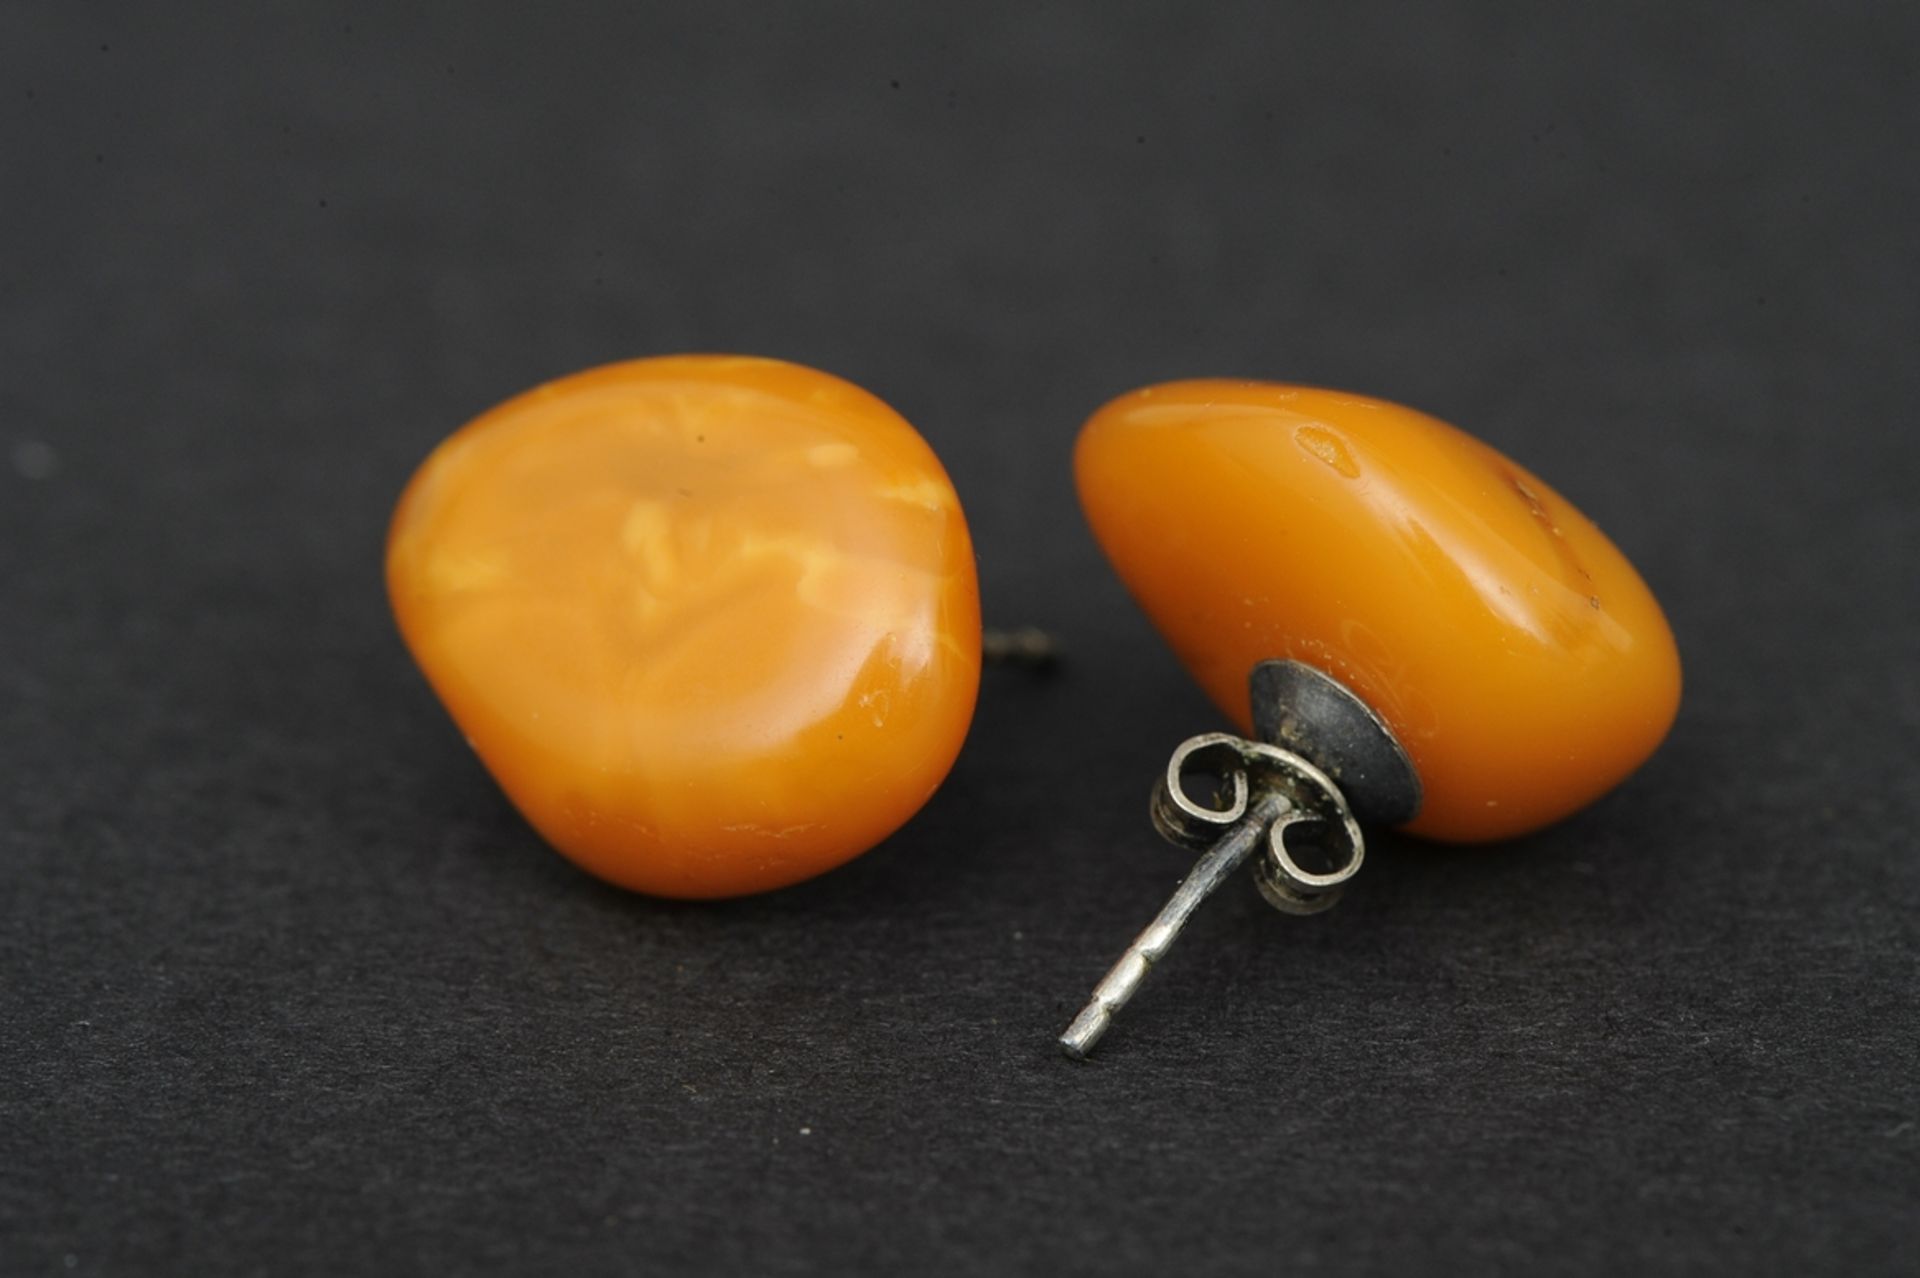 Paar Bernstein-Ohrstecker in Orange-Tönen, silberne Fassung, der Bernstein in Form und Farbe leicht